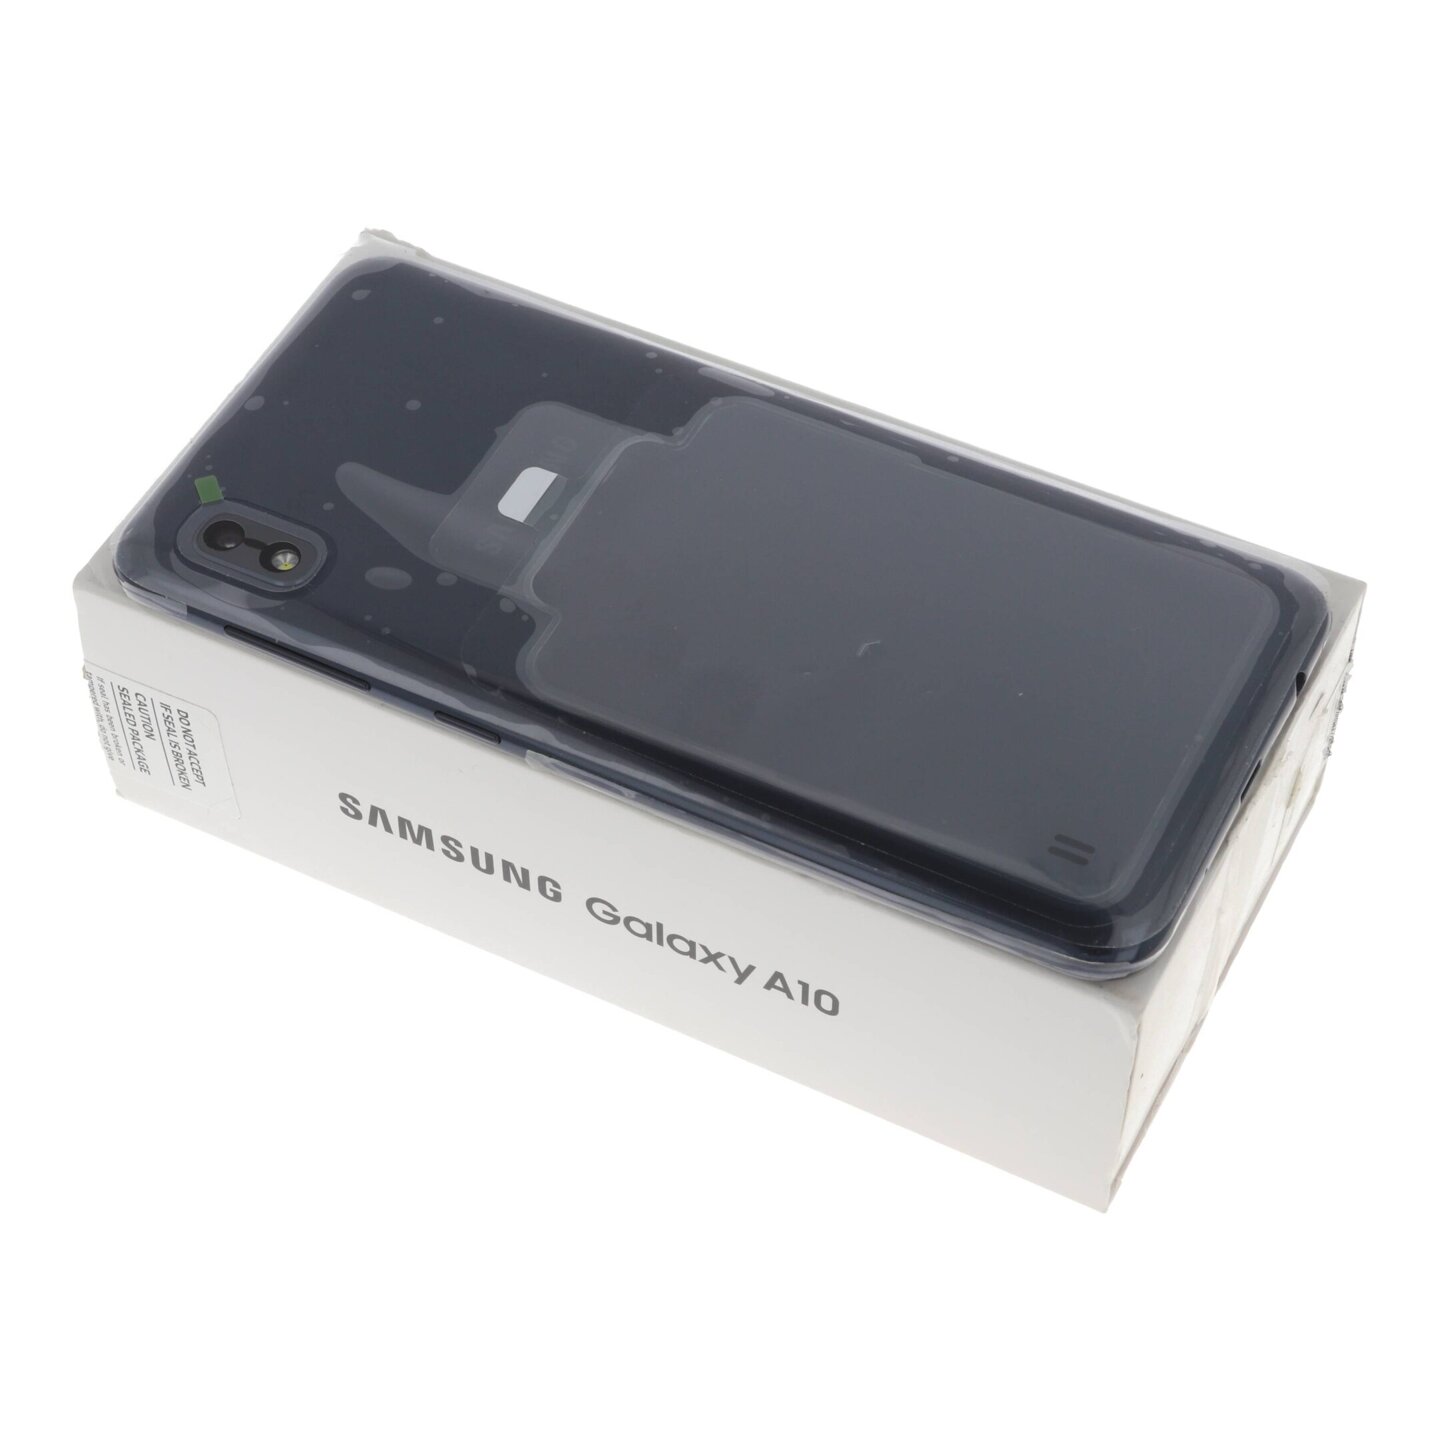 Smartfon Samsung Galaxy A10 LTE (A105 2/32GB)